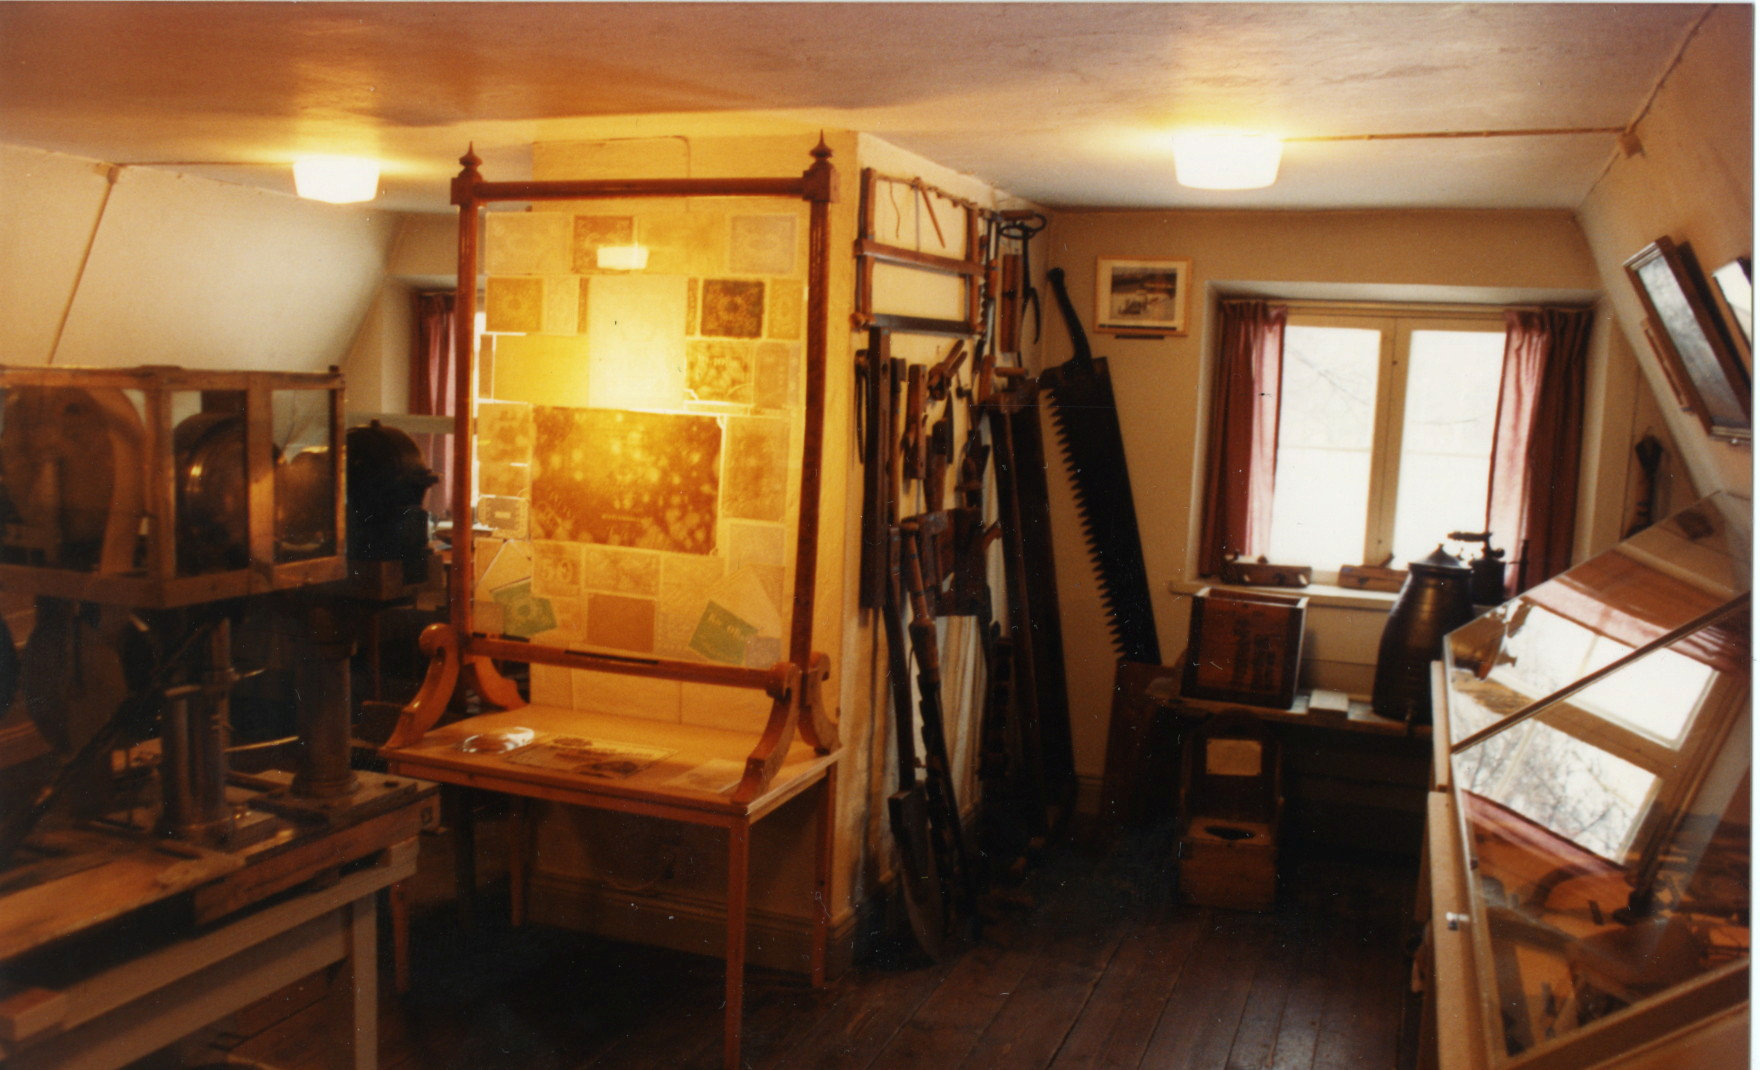 Ett rum med en mängd föremål stående runt väggarna samt i montrar.